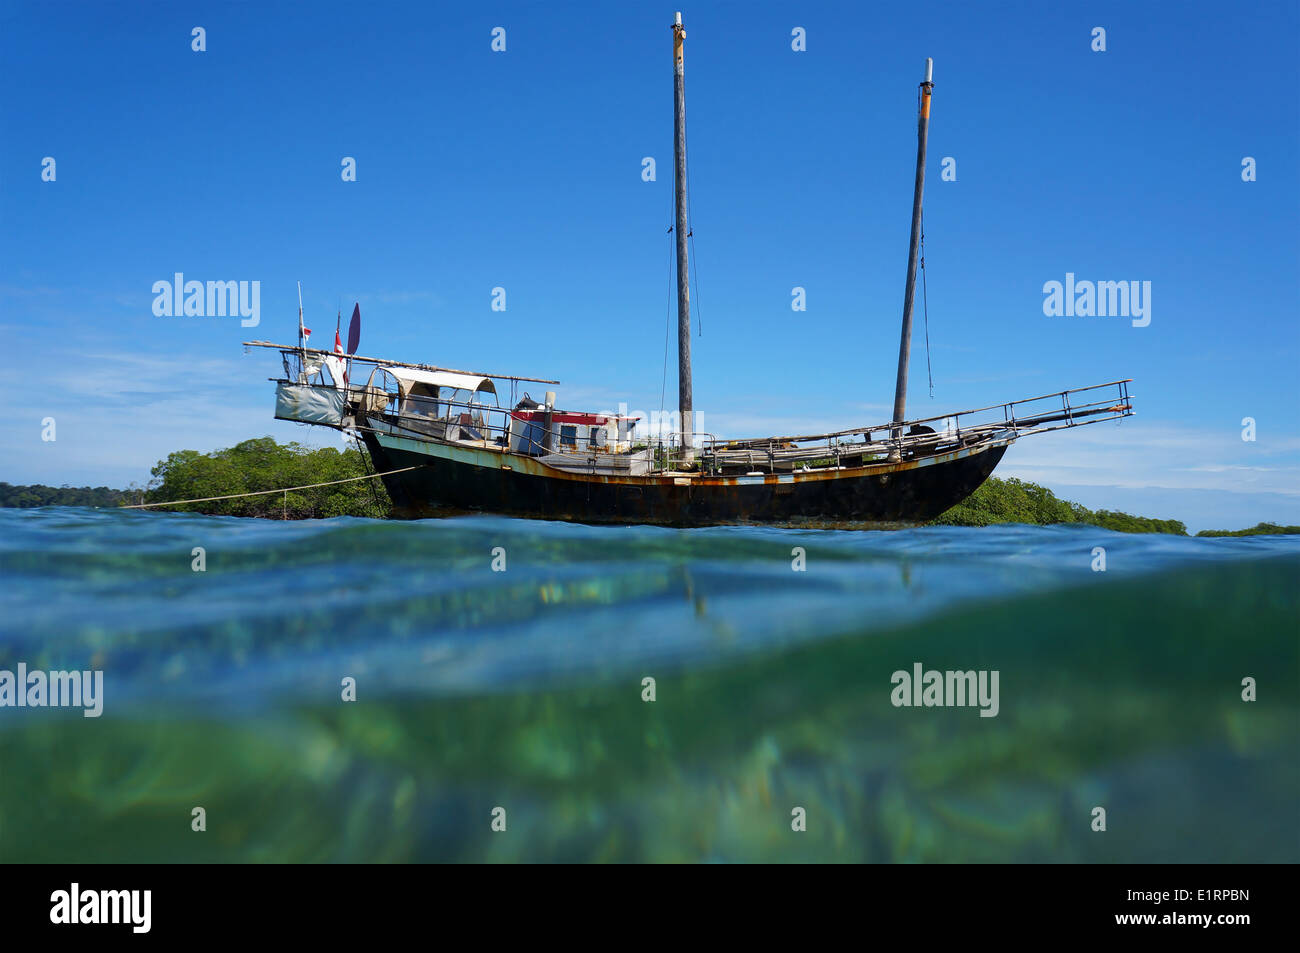 Vecchia barca a vela arenati su una scogliera poco profonda, visto dalla superficie dell'acqua, il mare dei Caraibi Foto Stock